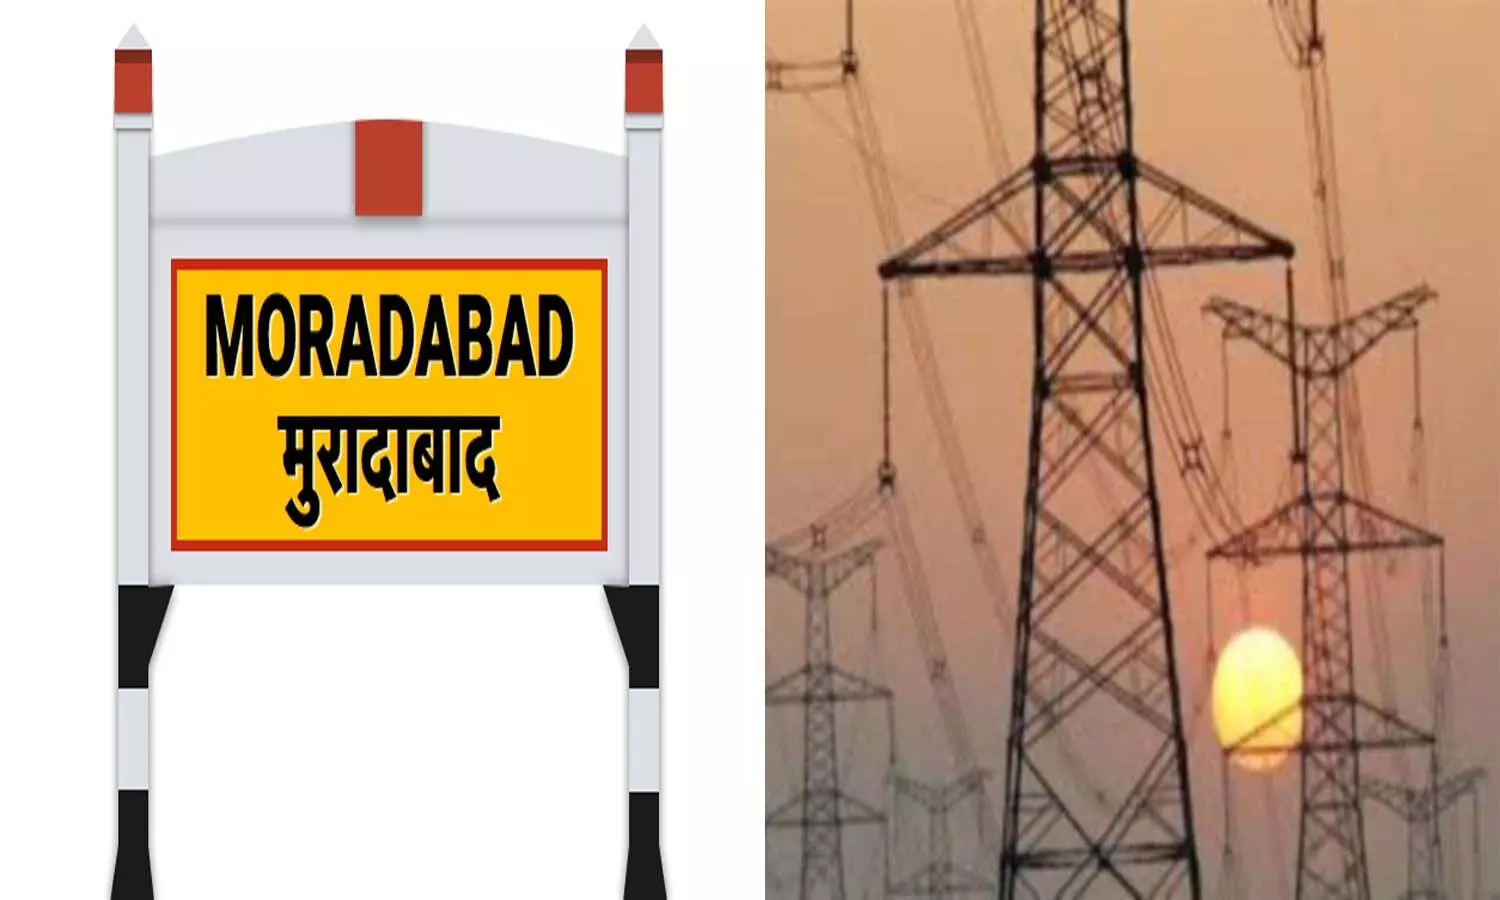 Power Cut In Moradabad: बिजली कटौती से परेशान पीतल कारीगर, बिजली विभाग की चल रही मनमानी